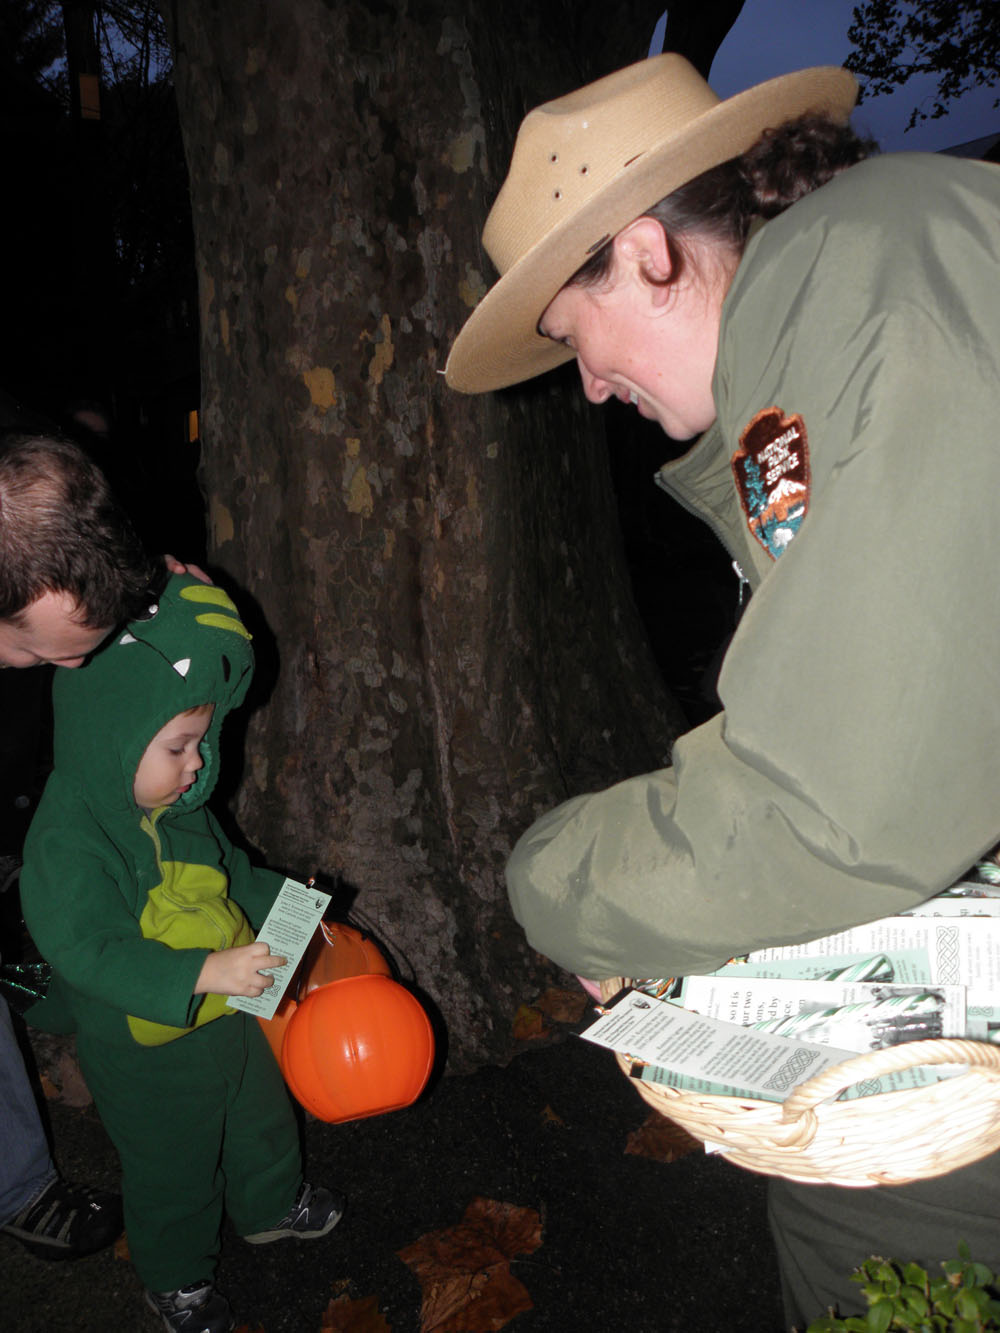 A ranger hands a child dressed as an alligator a Halloween treat.